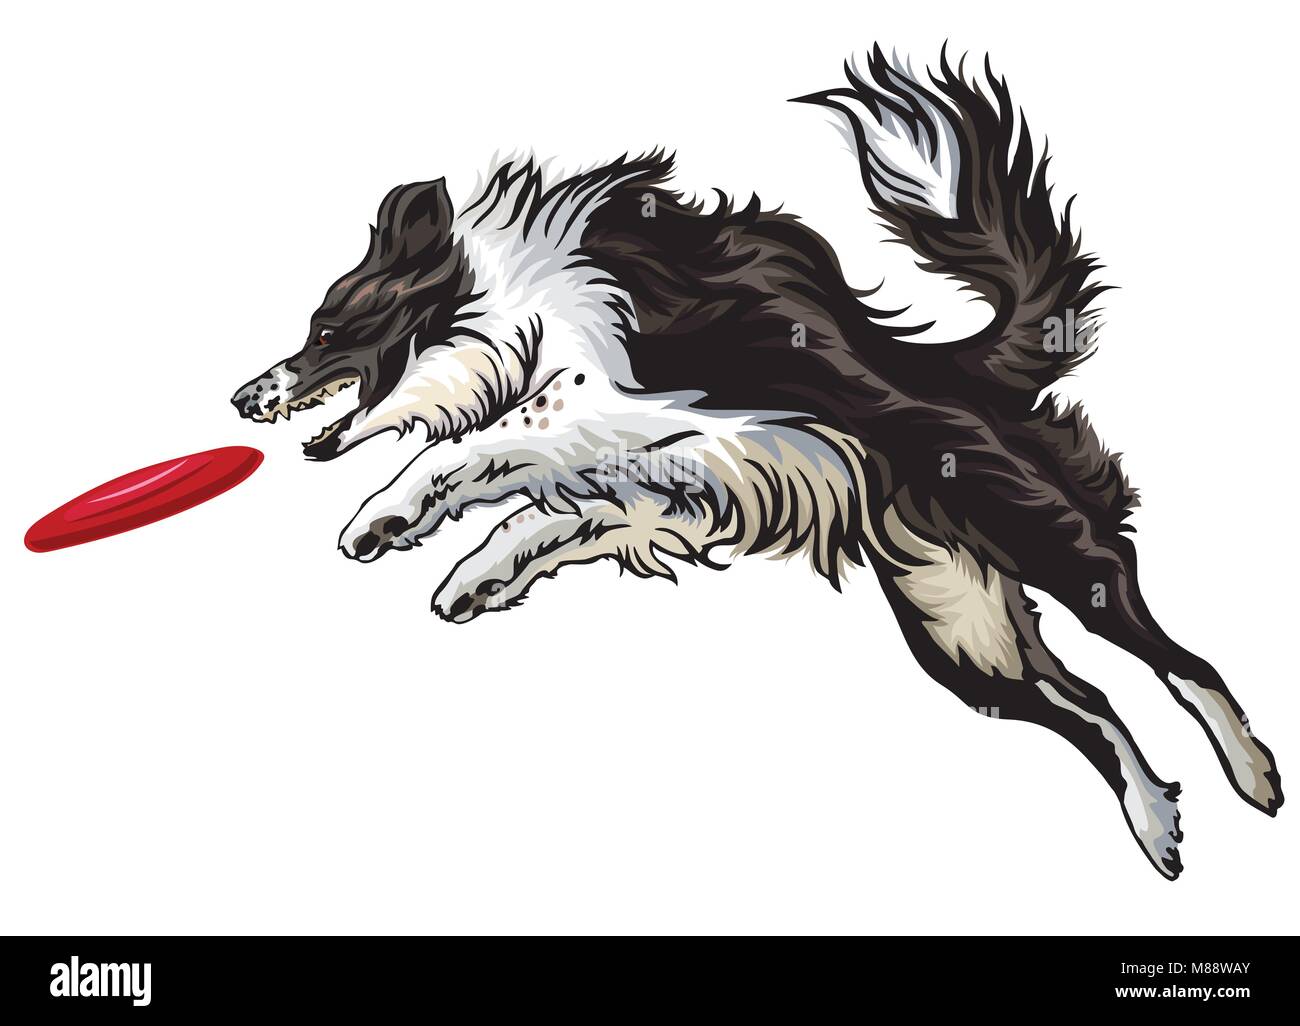 Perro Collie De Frontera En Salto Captura Frisbee Perro Juega En Closeup  Stock de ilustración - Ilustración de persona, gato: 271894025